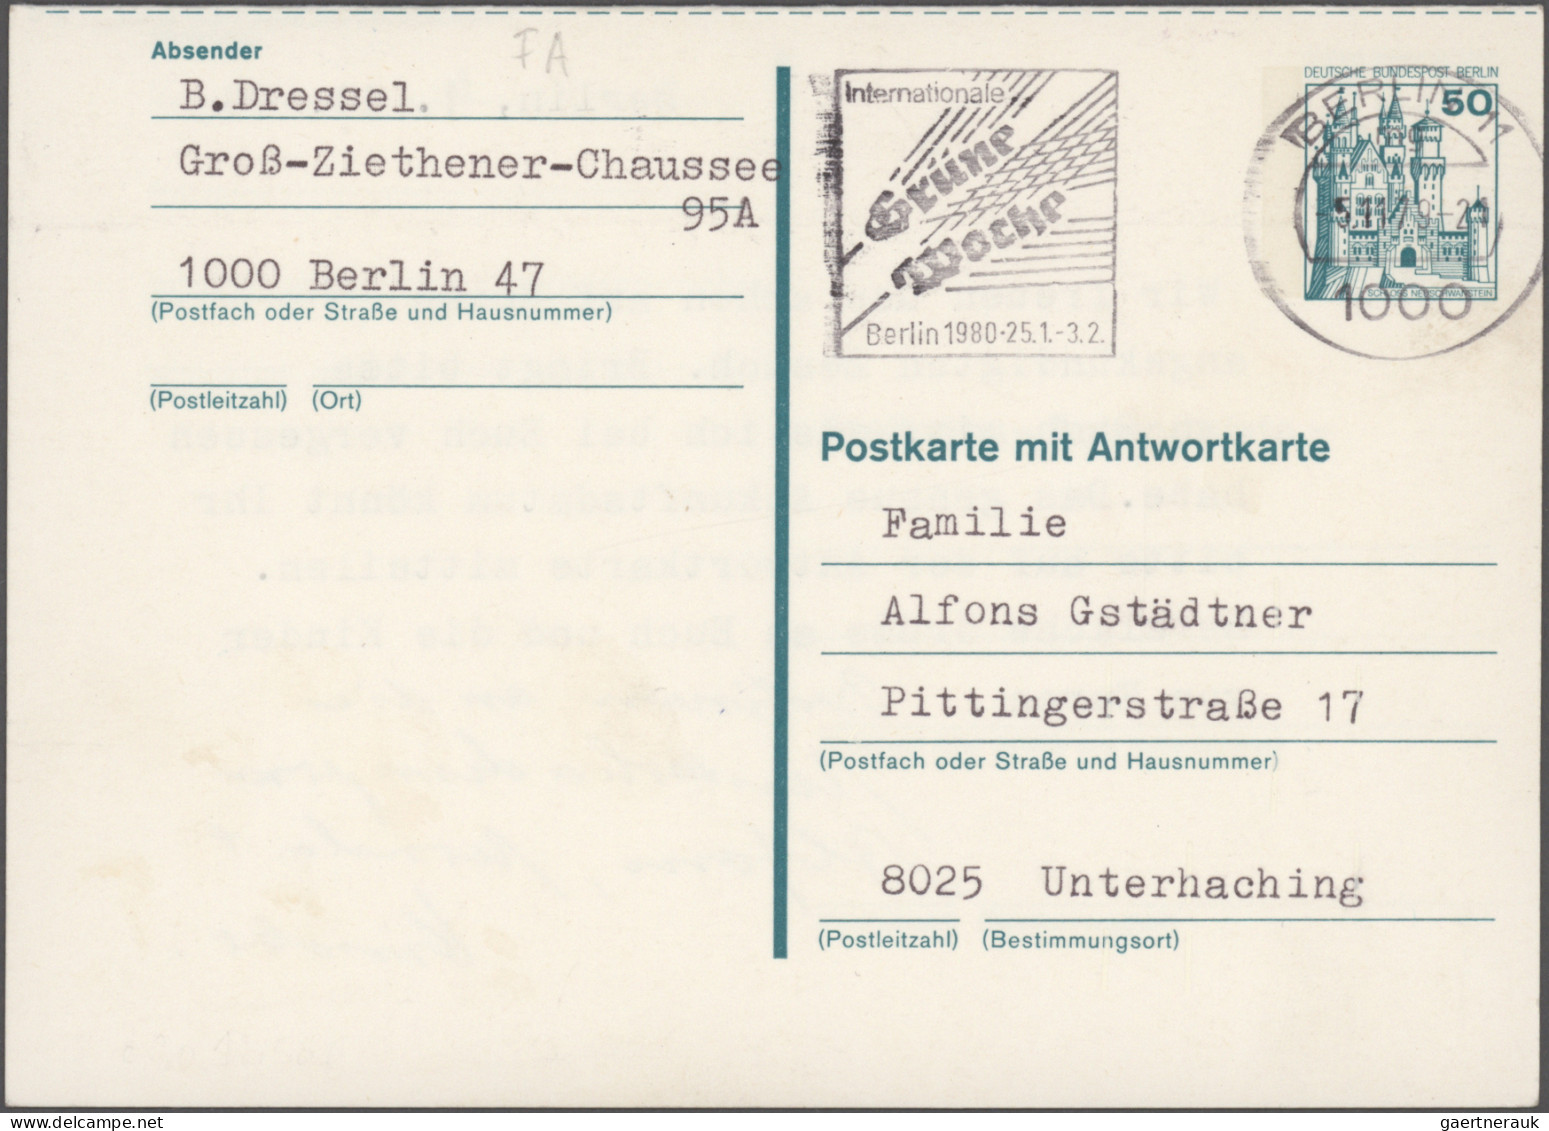 Berlin - Ganzsachen: 1972/1991, saubere Sammlung von ca. 154 gebrauchten und ung